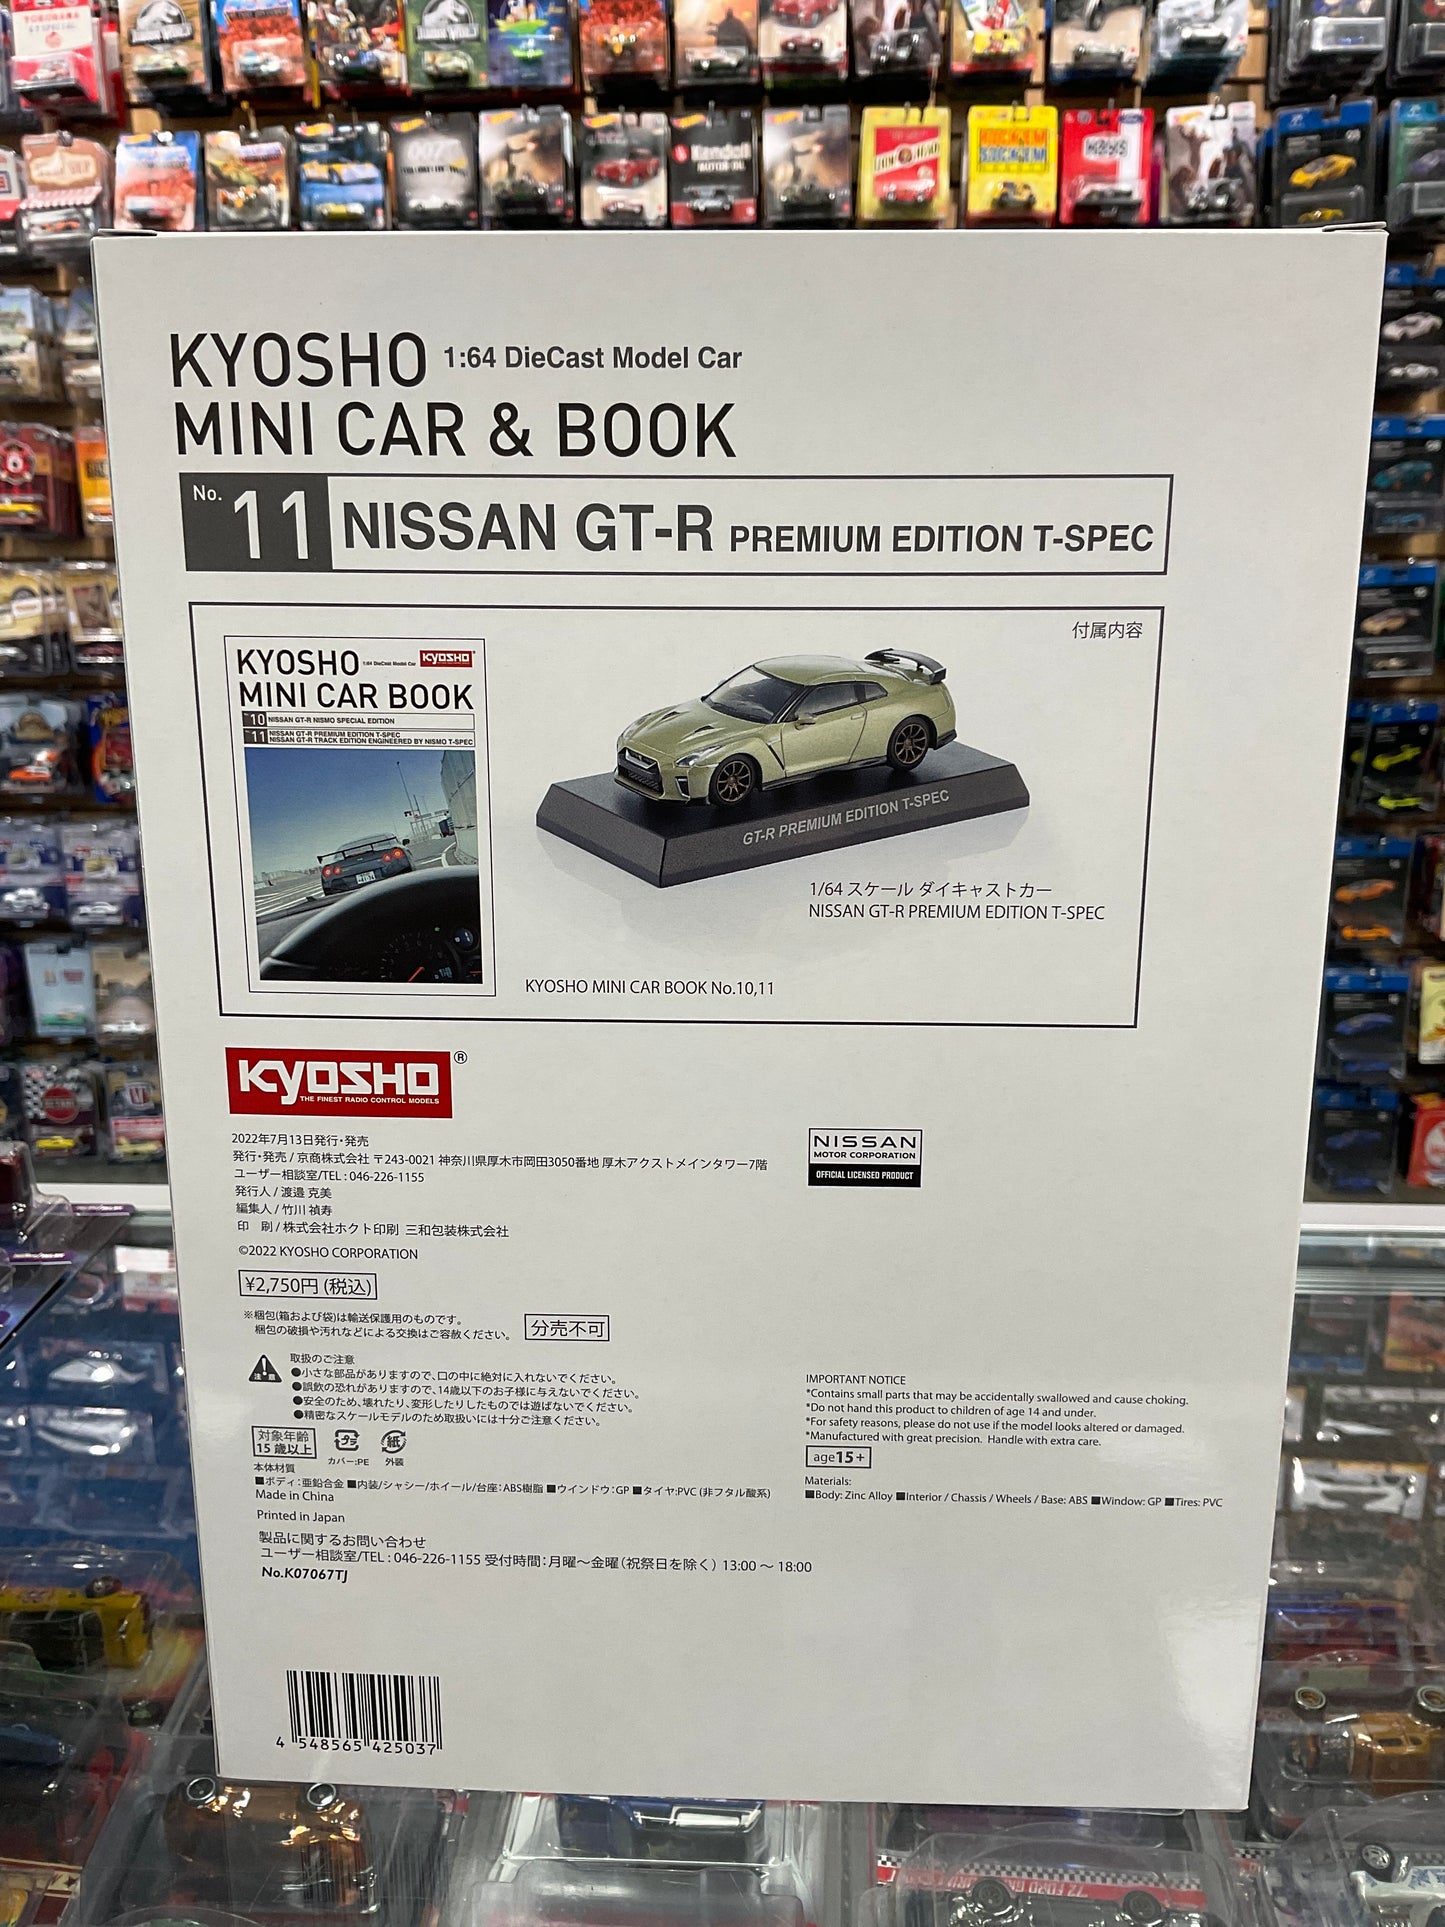 Kyosho mini book & car set #11 Nissan GT-R Premium Edition T-Spec